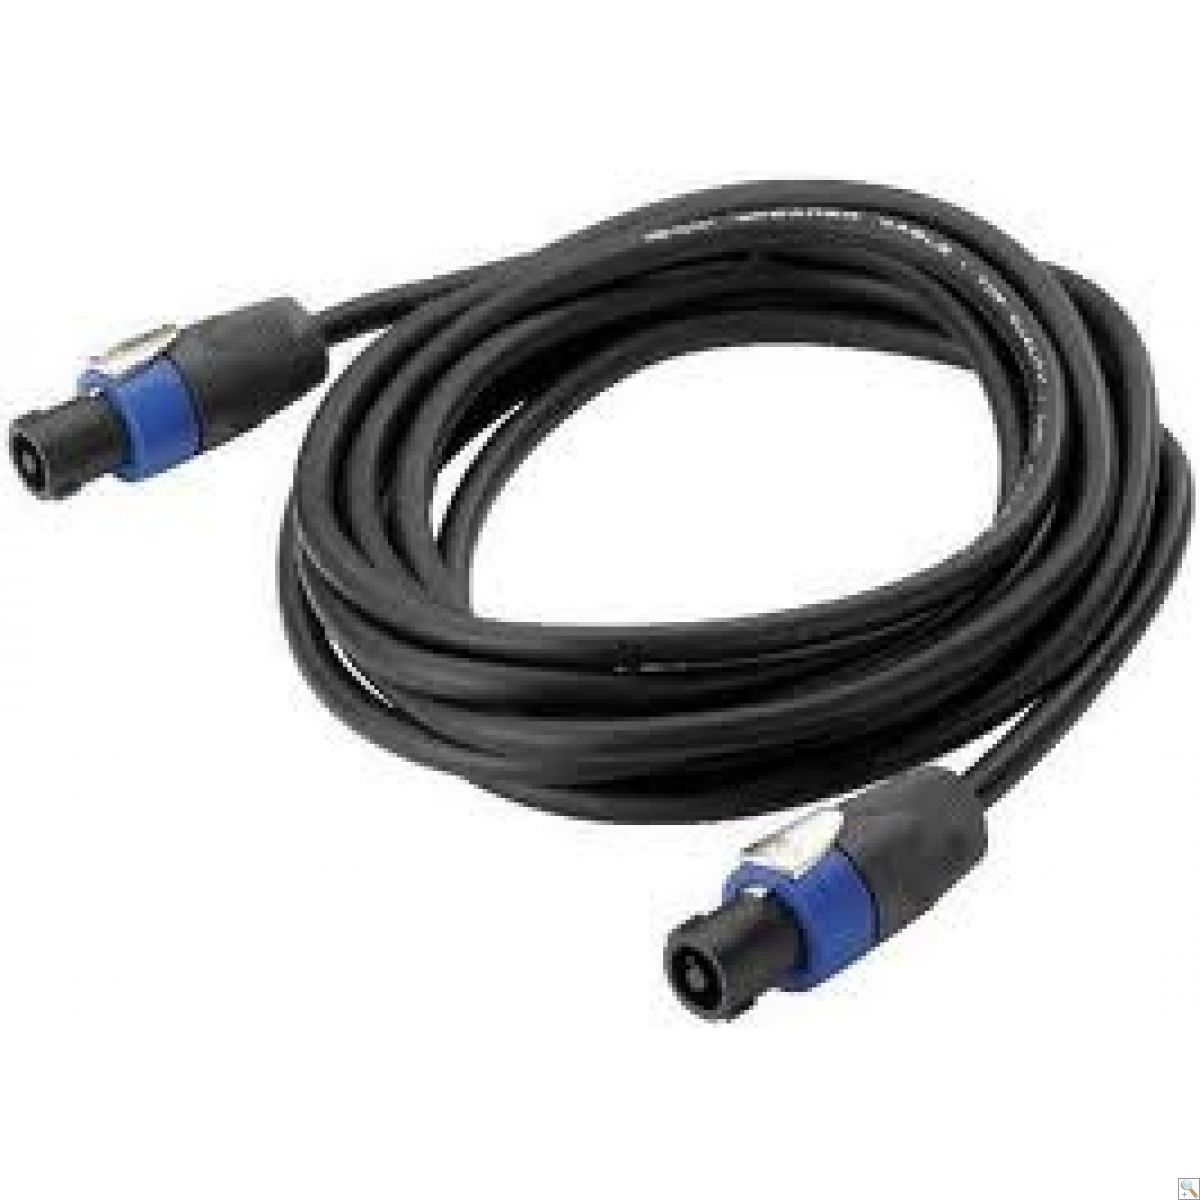 Speakon 4 pole plug to plug cables